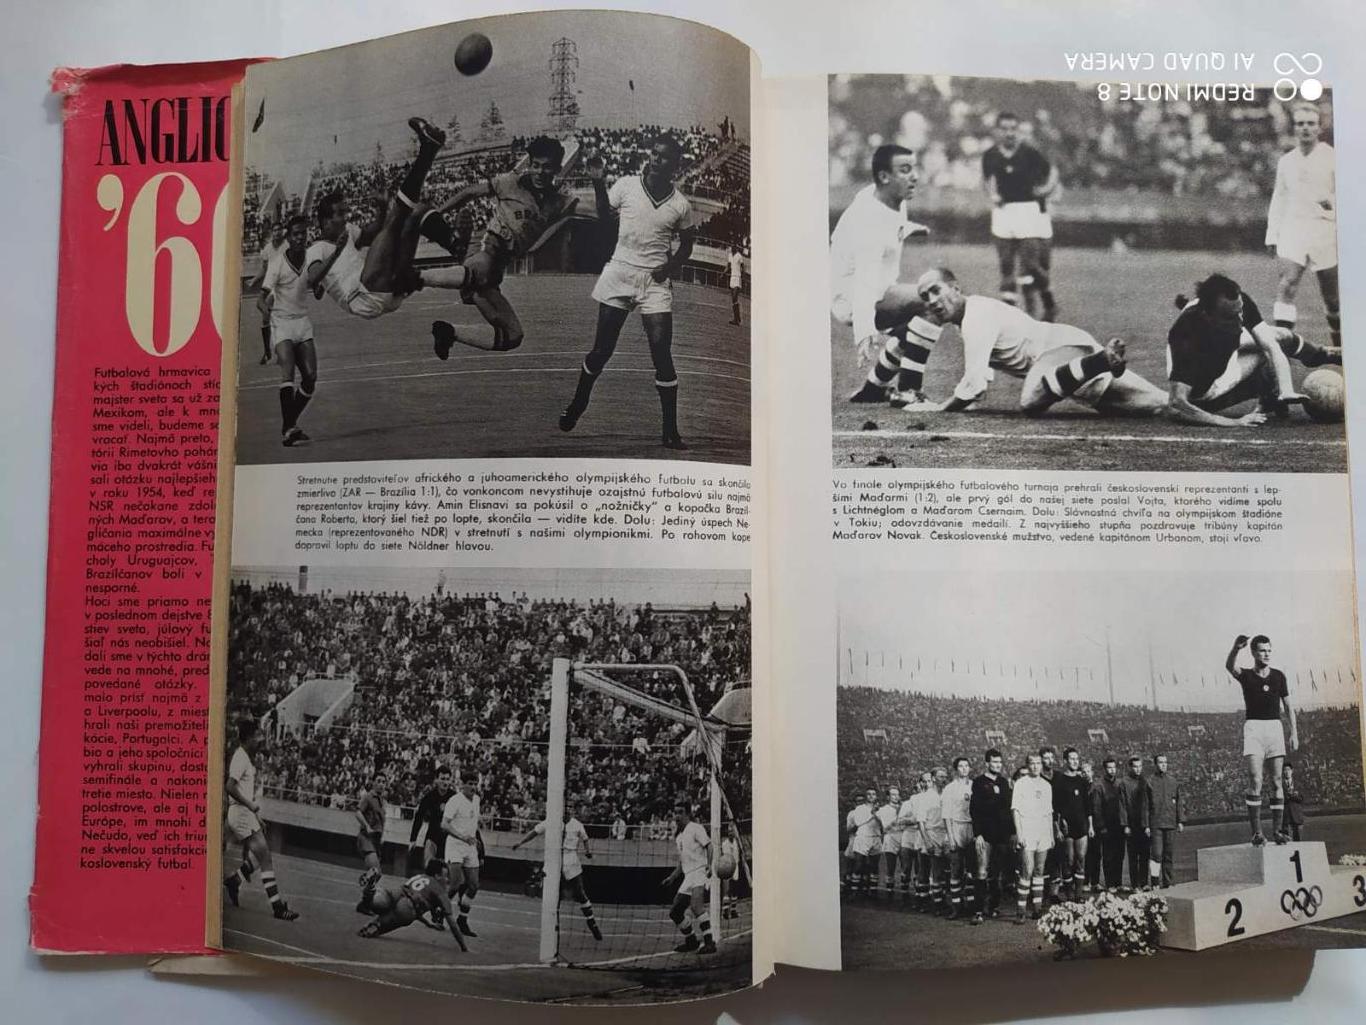 Imrich Hornacek Anglicko 1966 Чемпионат мира по футболу в Англии 1966 г. 1